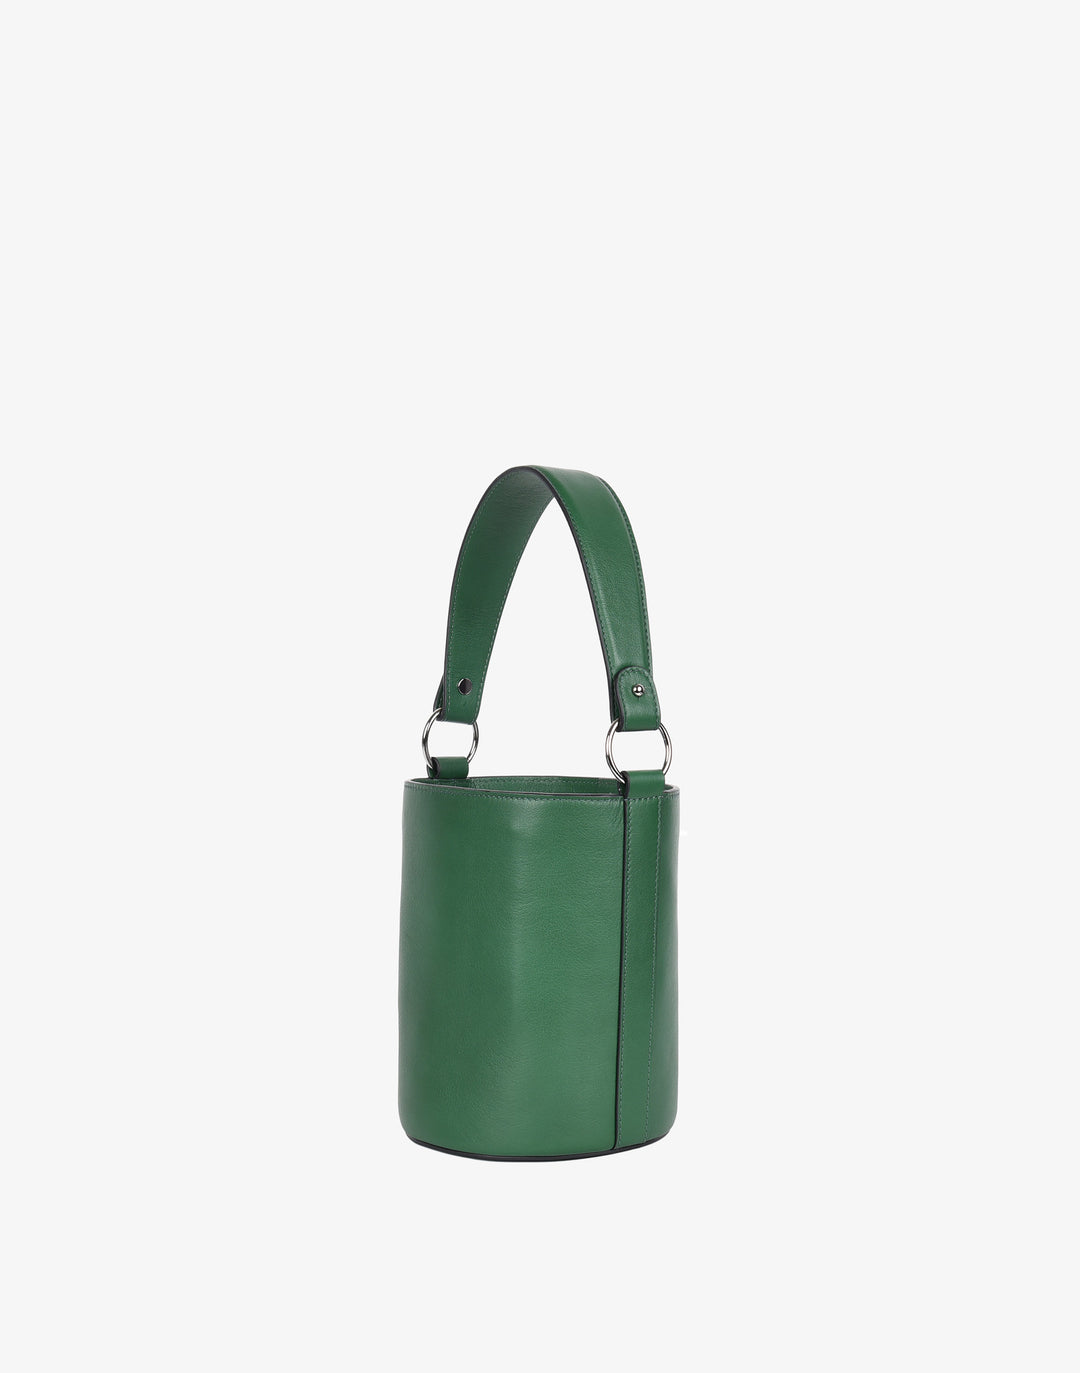 Hyer Goods Luxe Convertible Bucket Bag